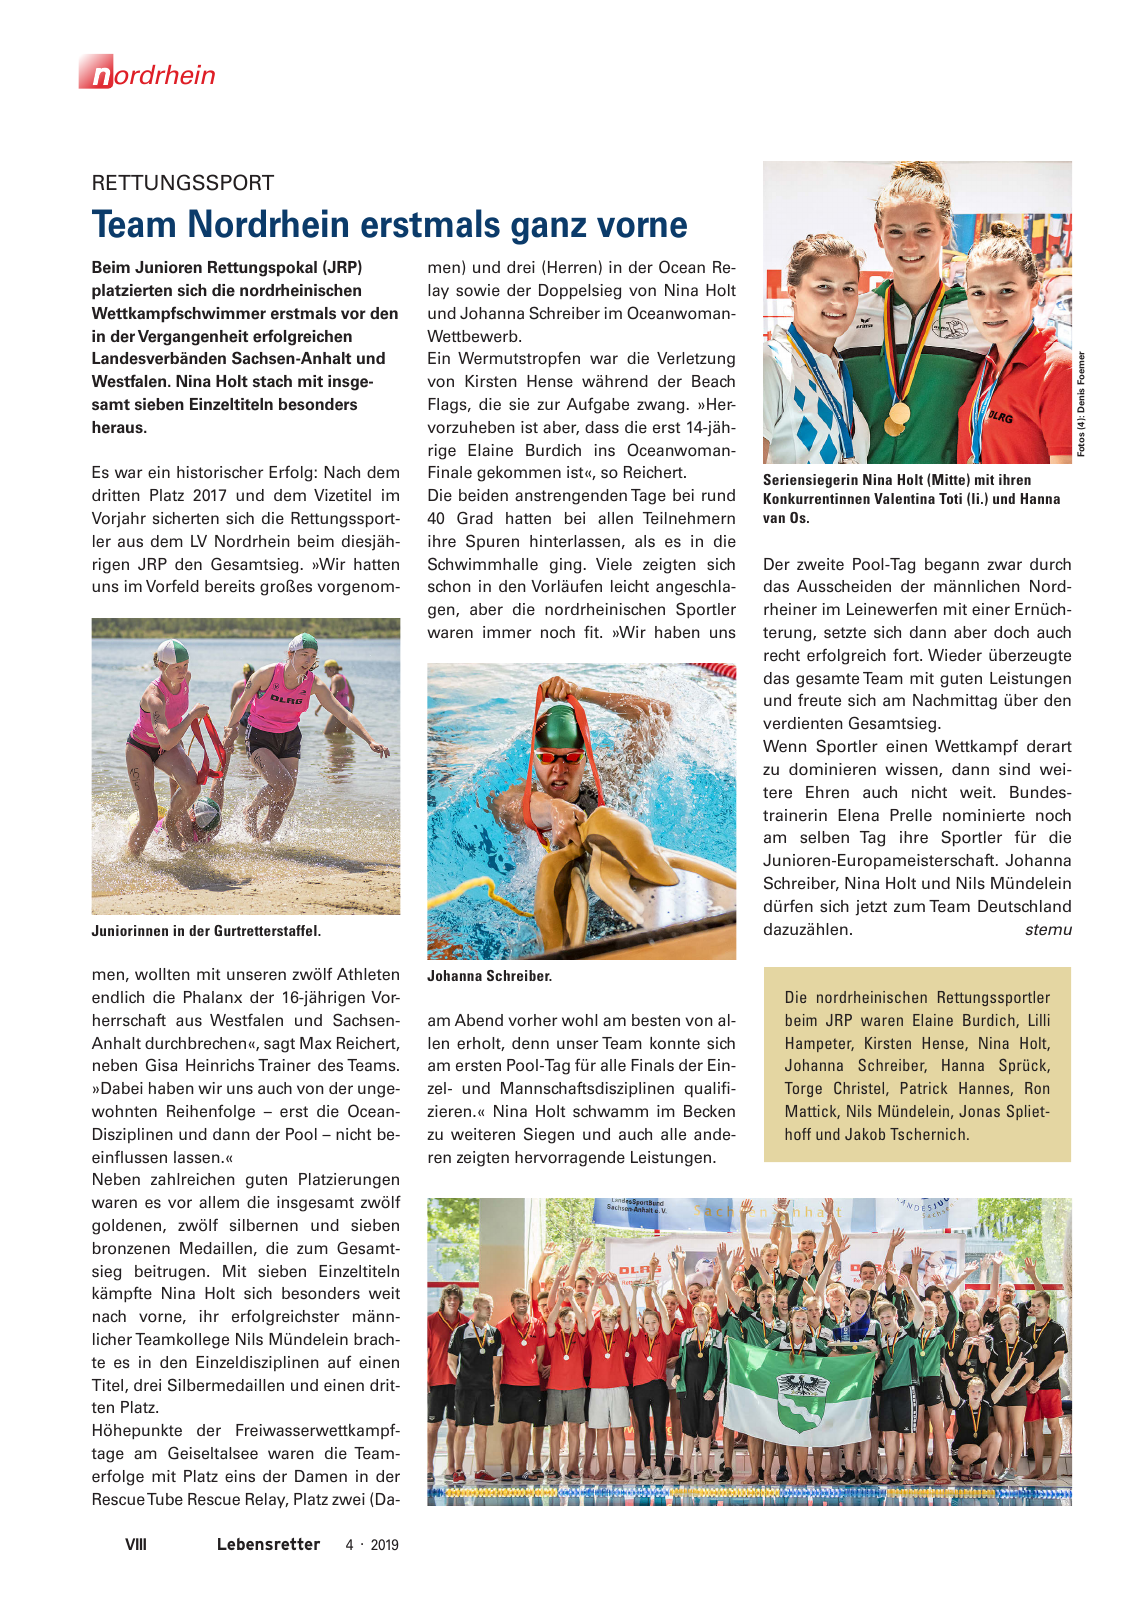 Vorschau Lebensretter 4/2019 -  Nordrhein Regionalausgabe Seite 10